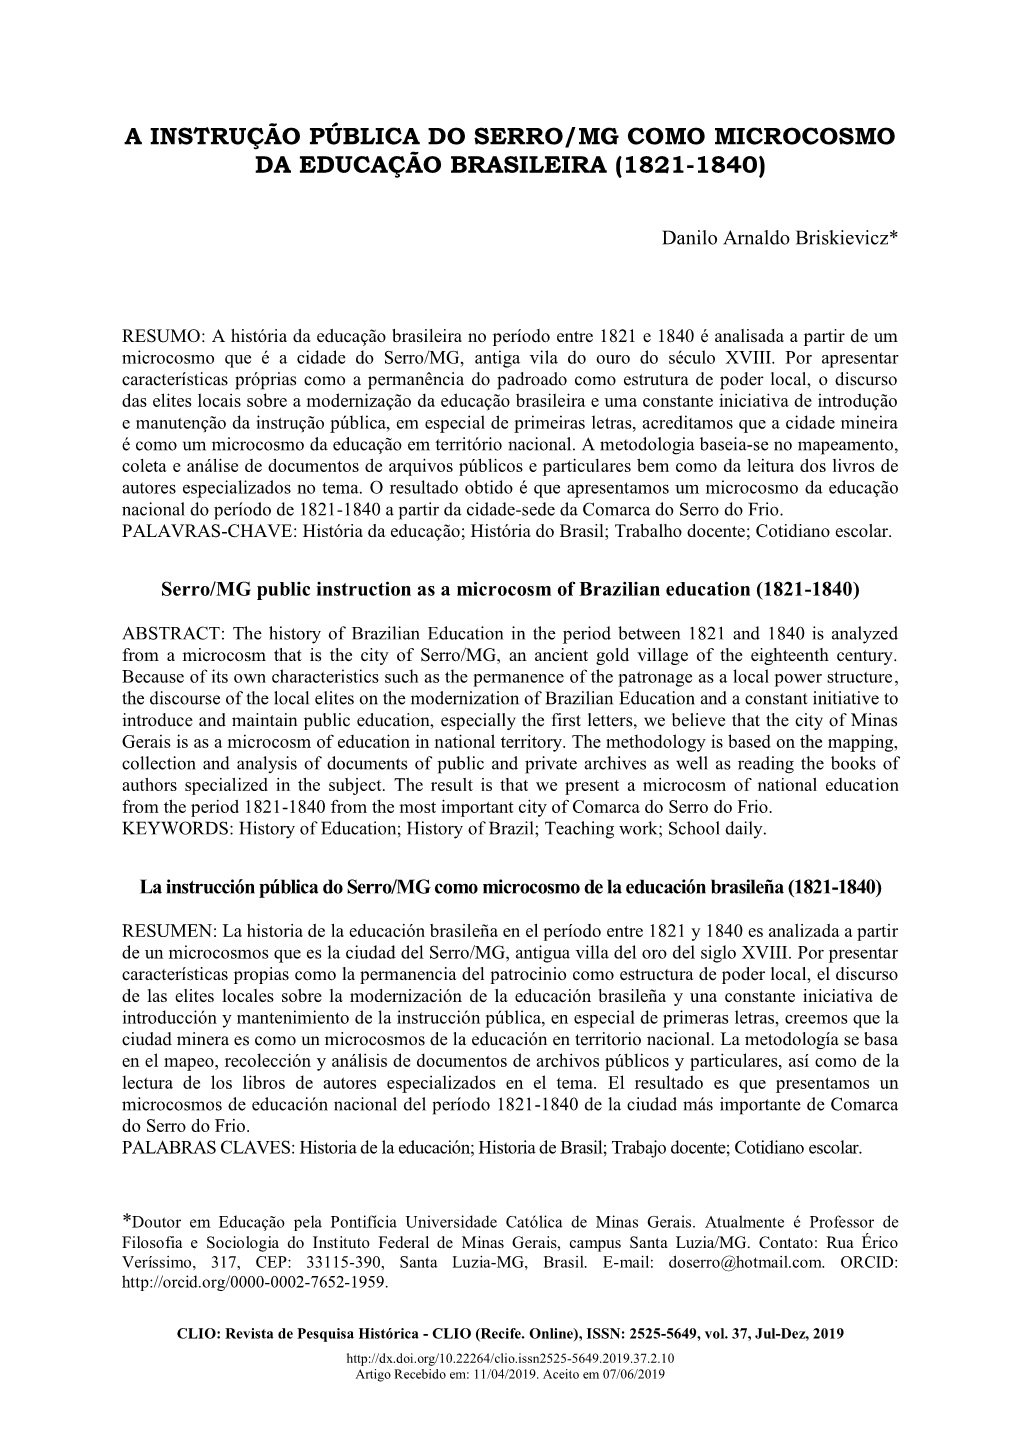 A Instrução Pública Do Serro/Mg Como Microcosmo Da Educação Brasileira (1821-1840)